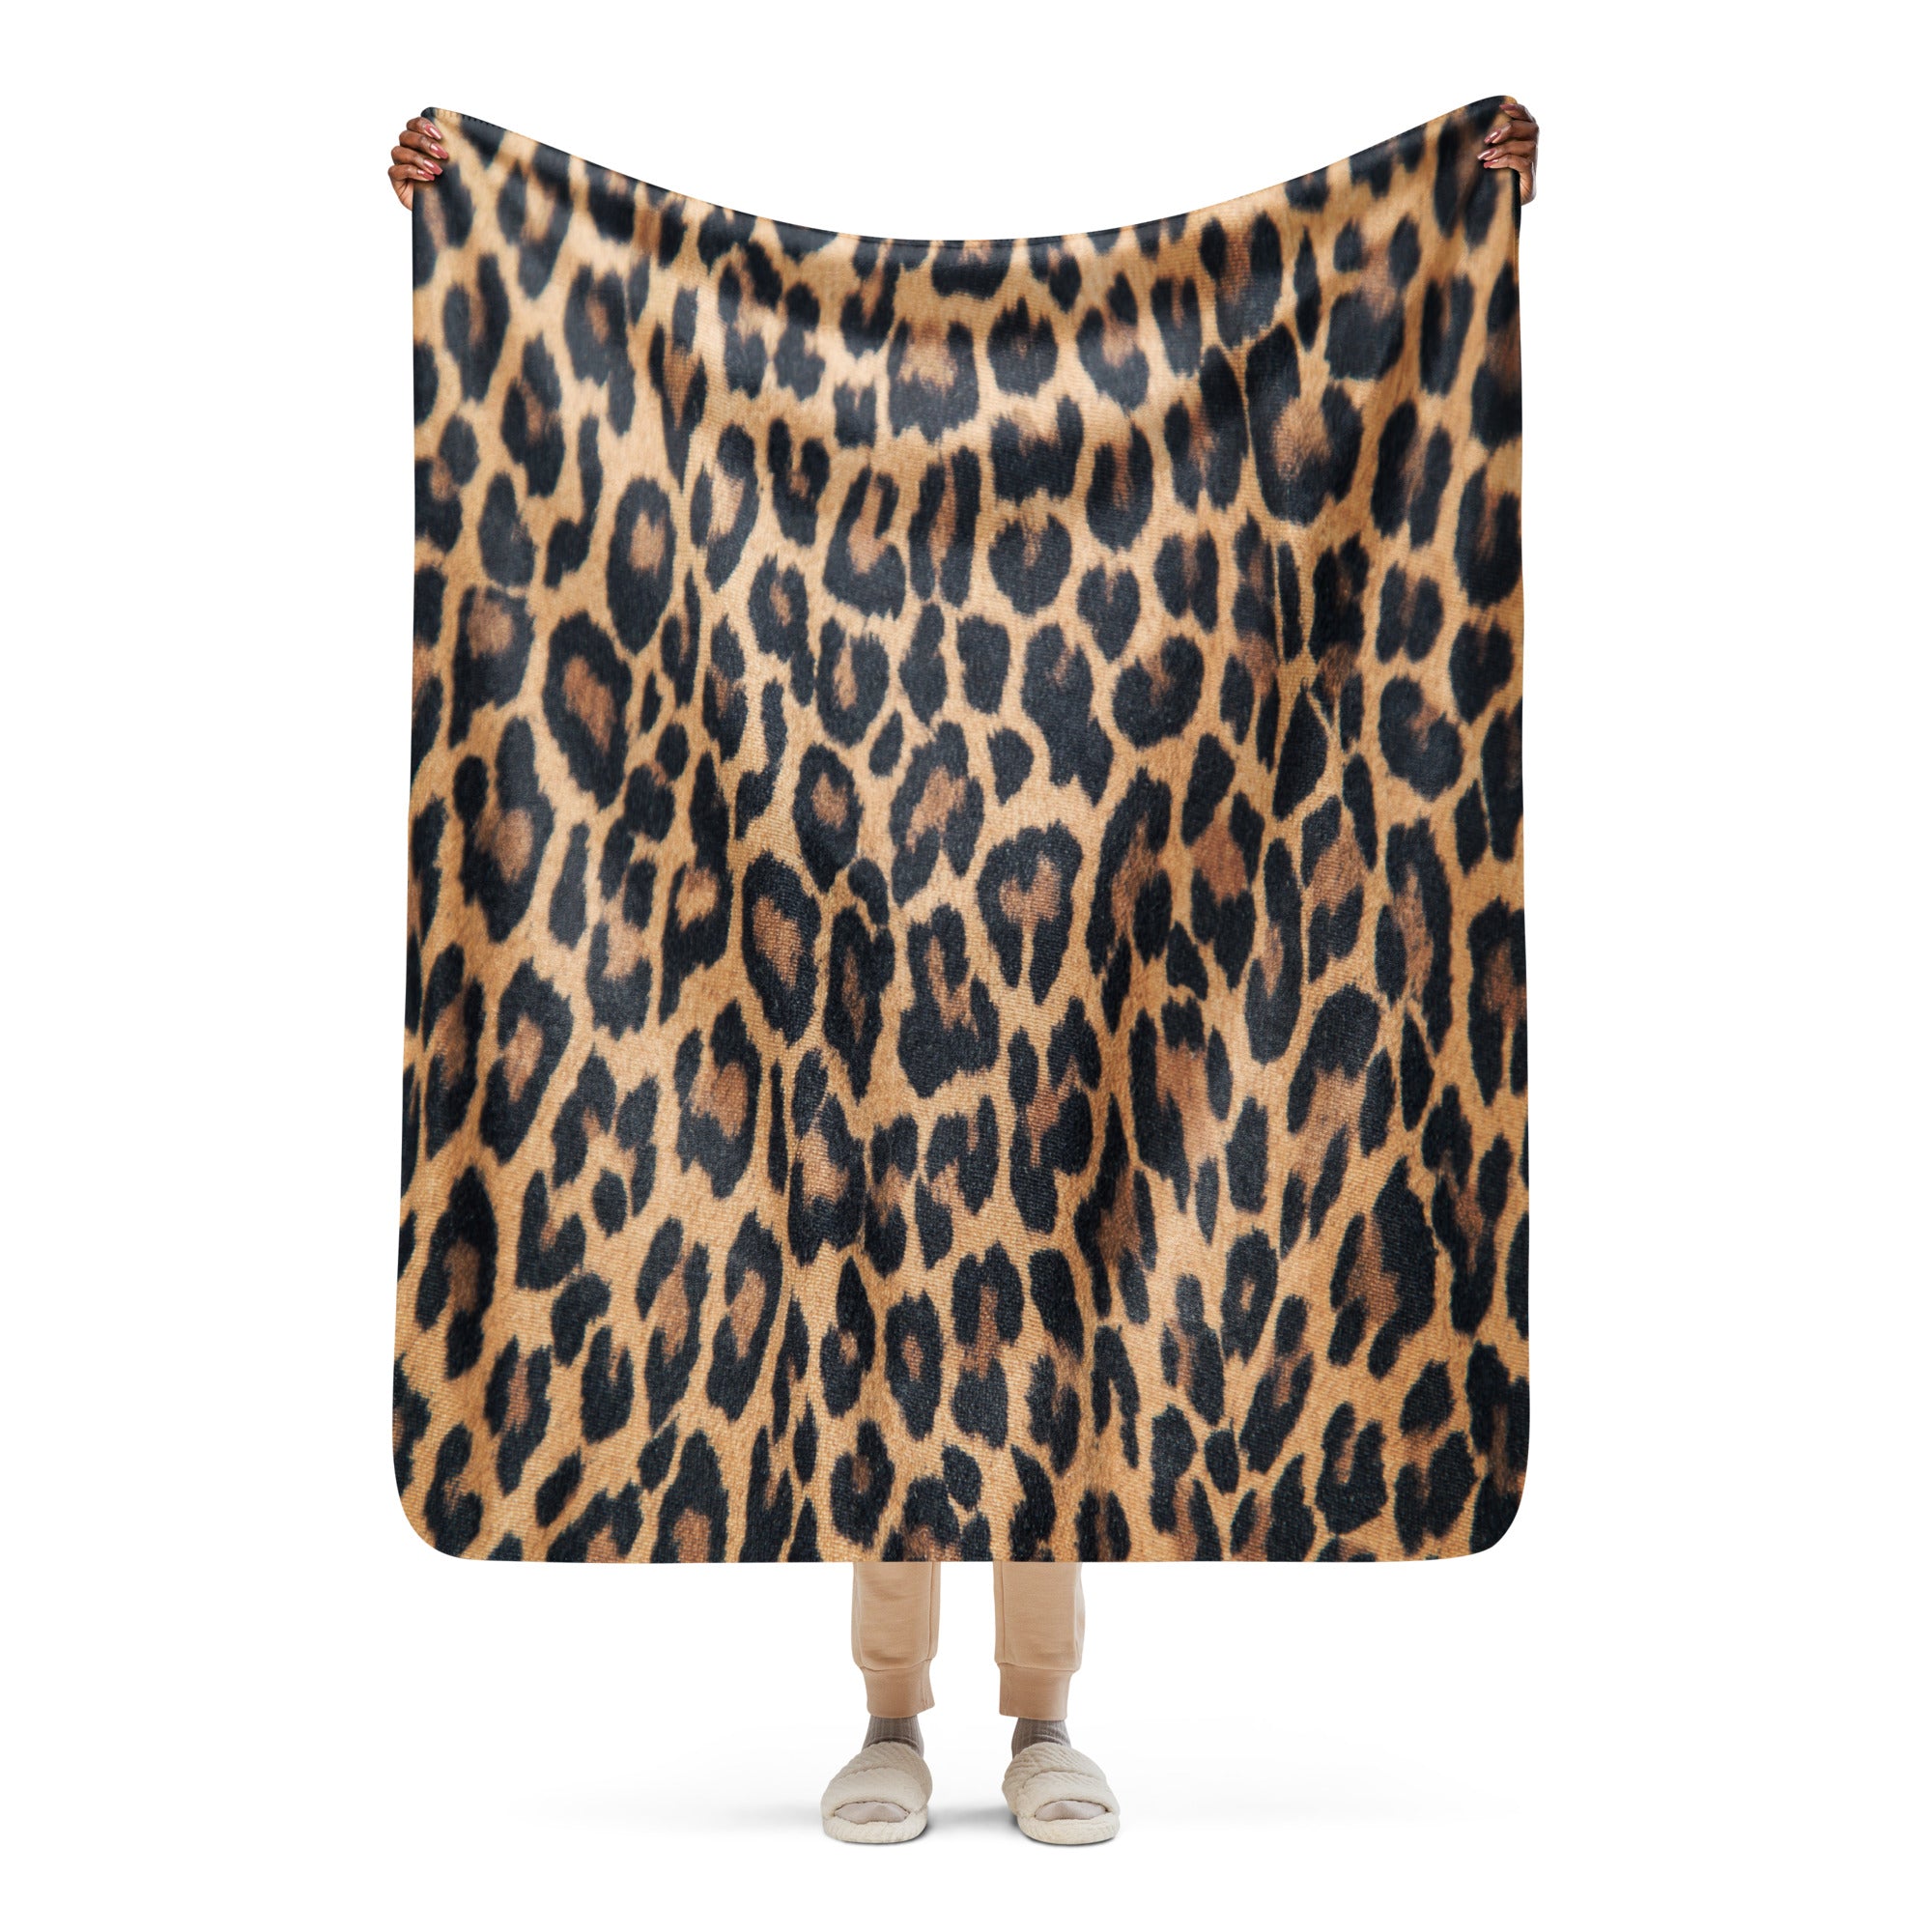 Luxe Leopard Sherpa blanket www.lioness-love.com